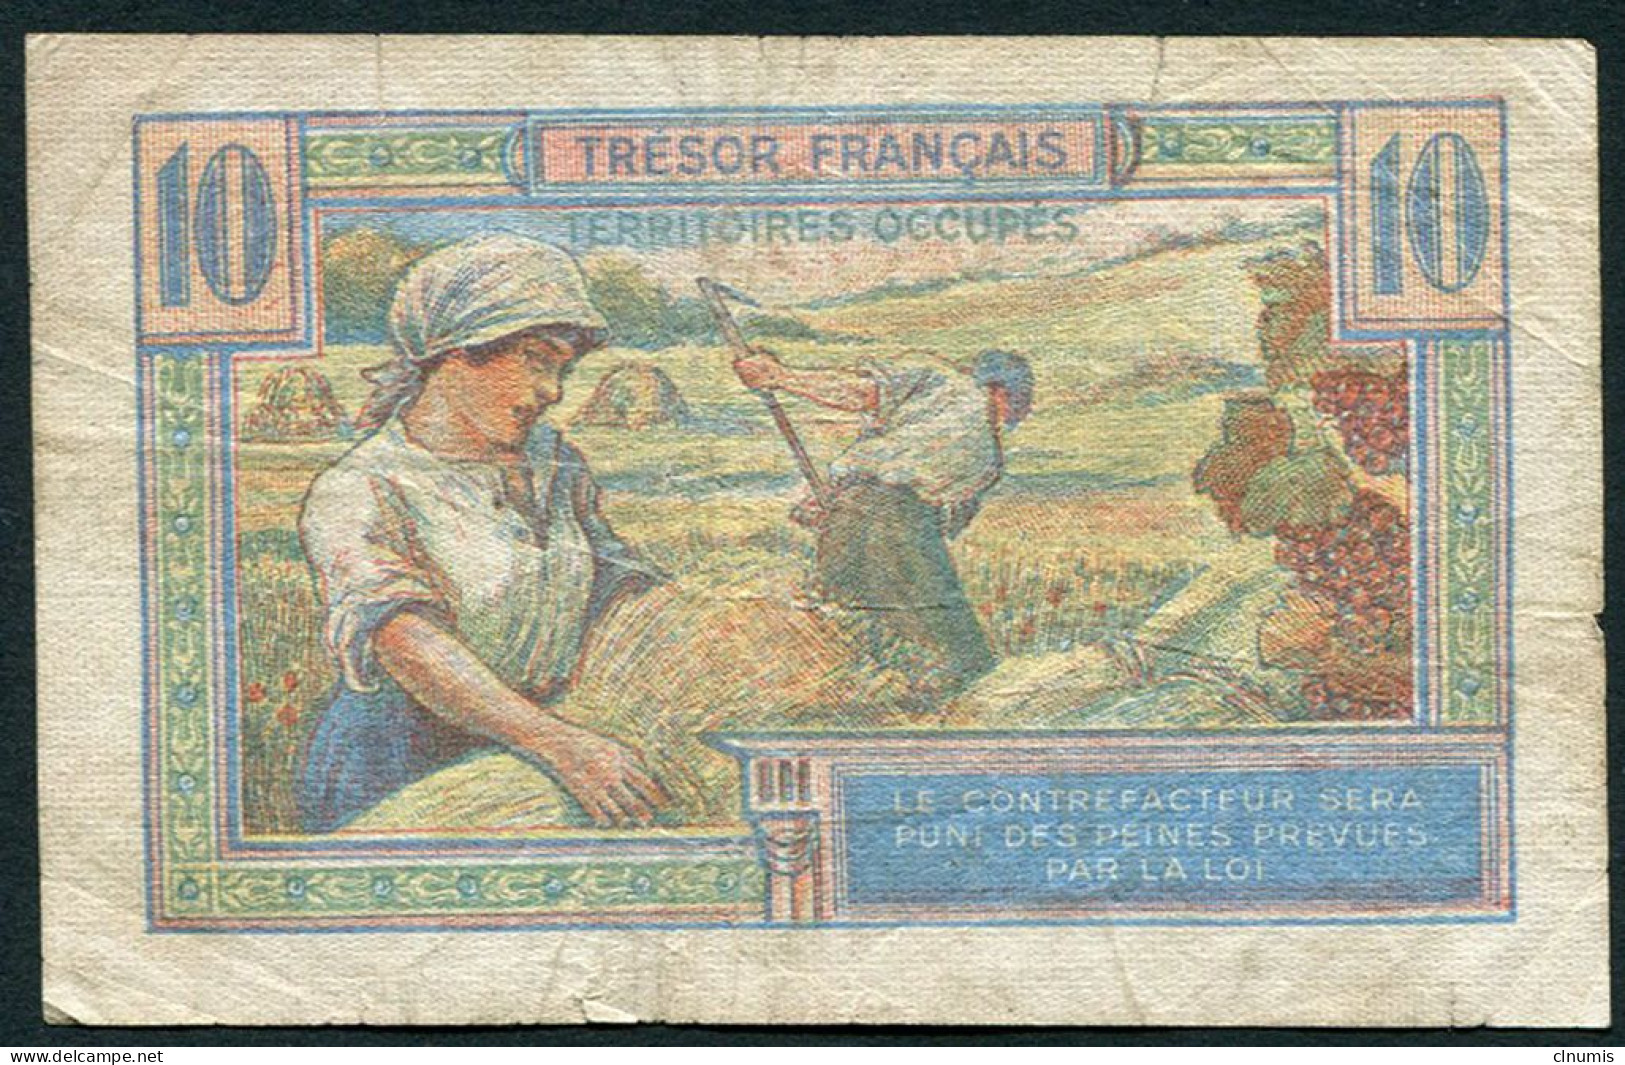 10 Francs Trésor Français 1947, A. 09317225 - 1947 French Treasury